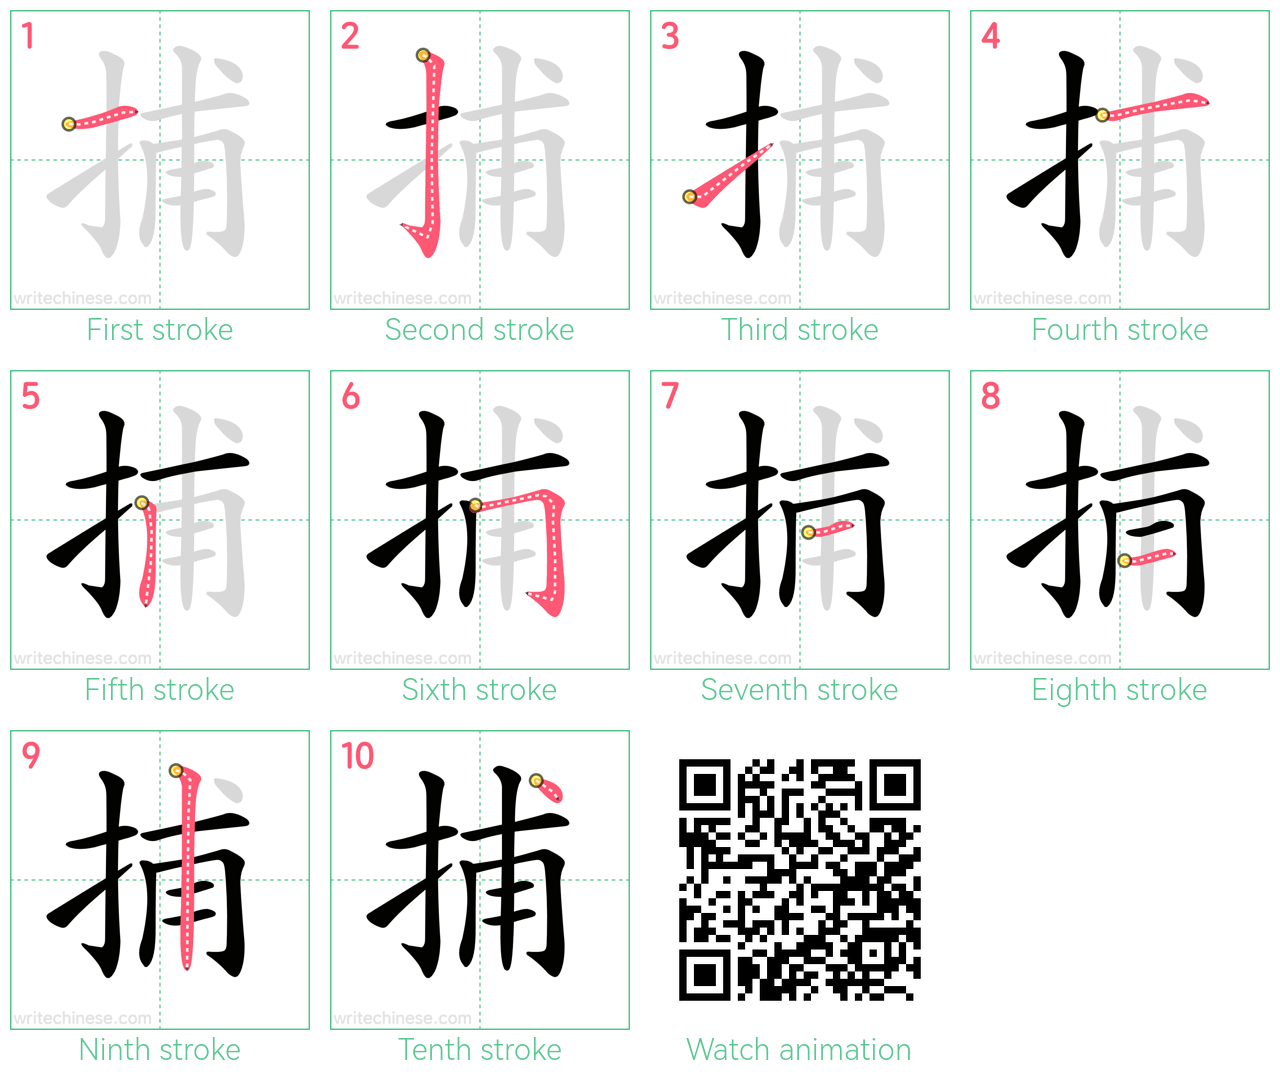 捕 step-by-step stroke order diagrams